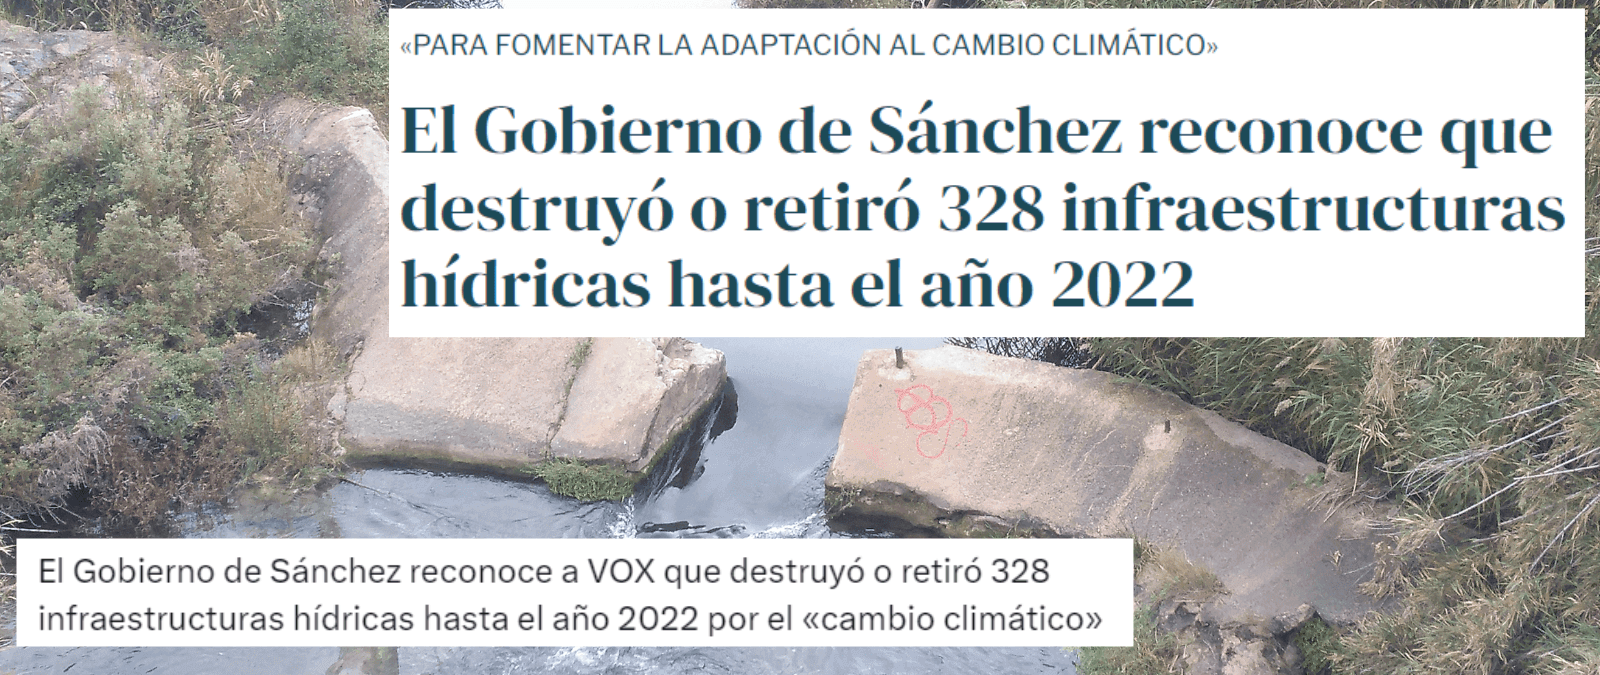 La destrucción de “infraestructuras hídricas” que “el Gobierno de Sánchez reconoce a Vox”: son barreras fluviales, no presas ni embalses